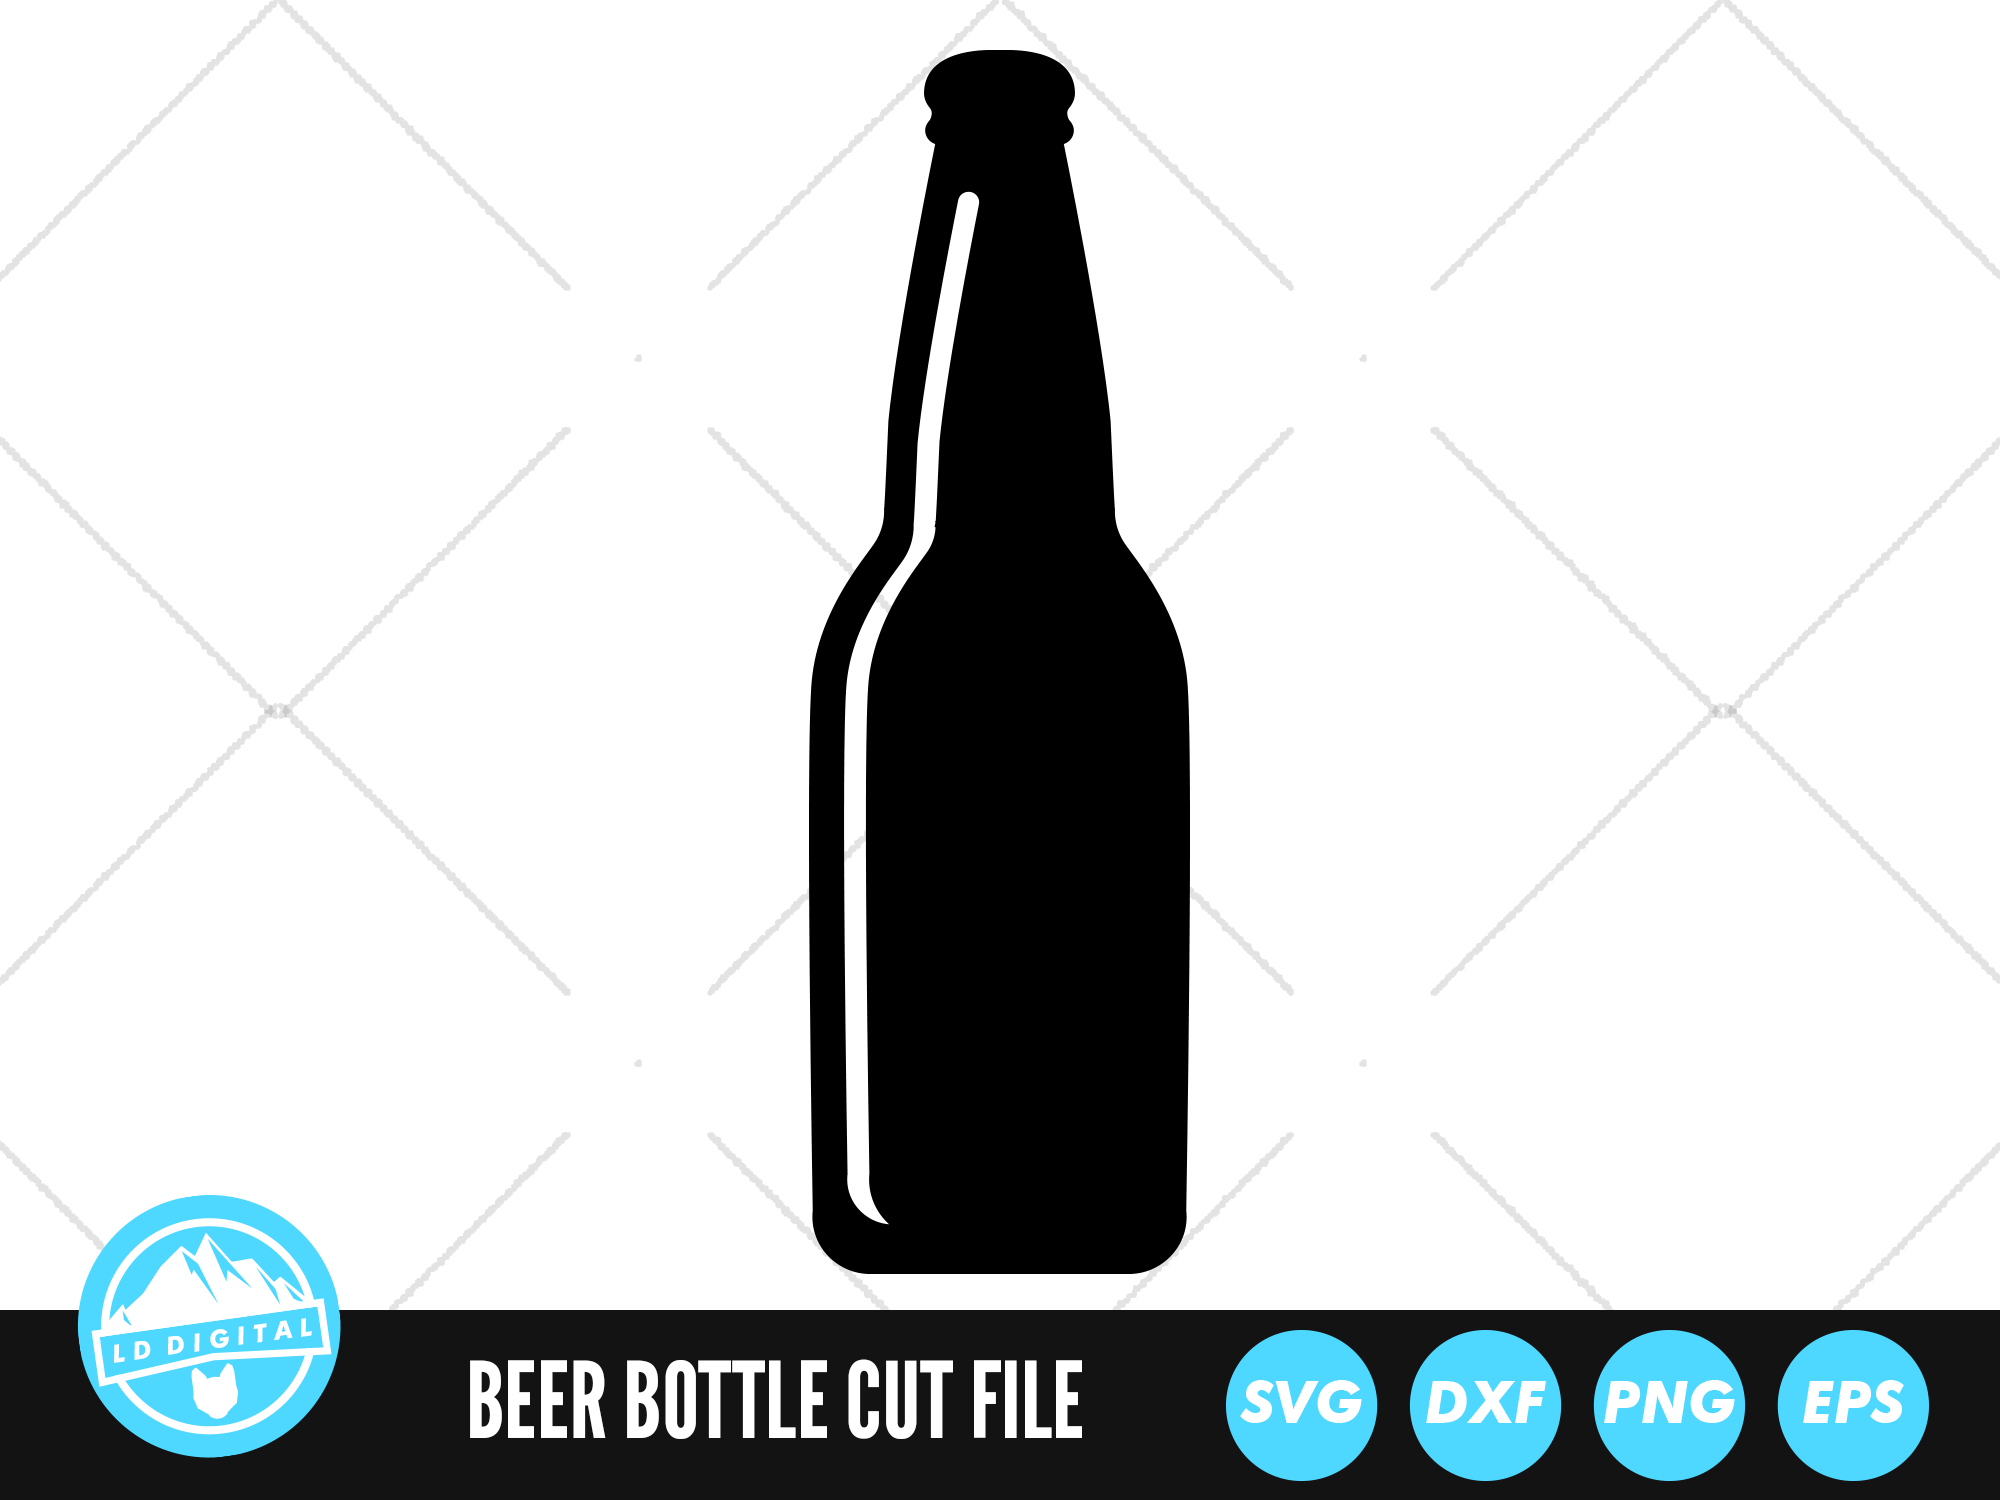 Download Art Collectibles Clip Art Alcohol Svg Beer Bottle Outline Svg Beer Bottle Cut Files Beer Bottle Clipart Dxf Beer Svg Pdf Beer Files For Cricut Png Eps